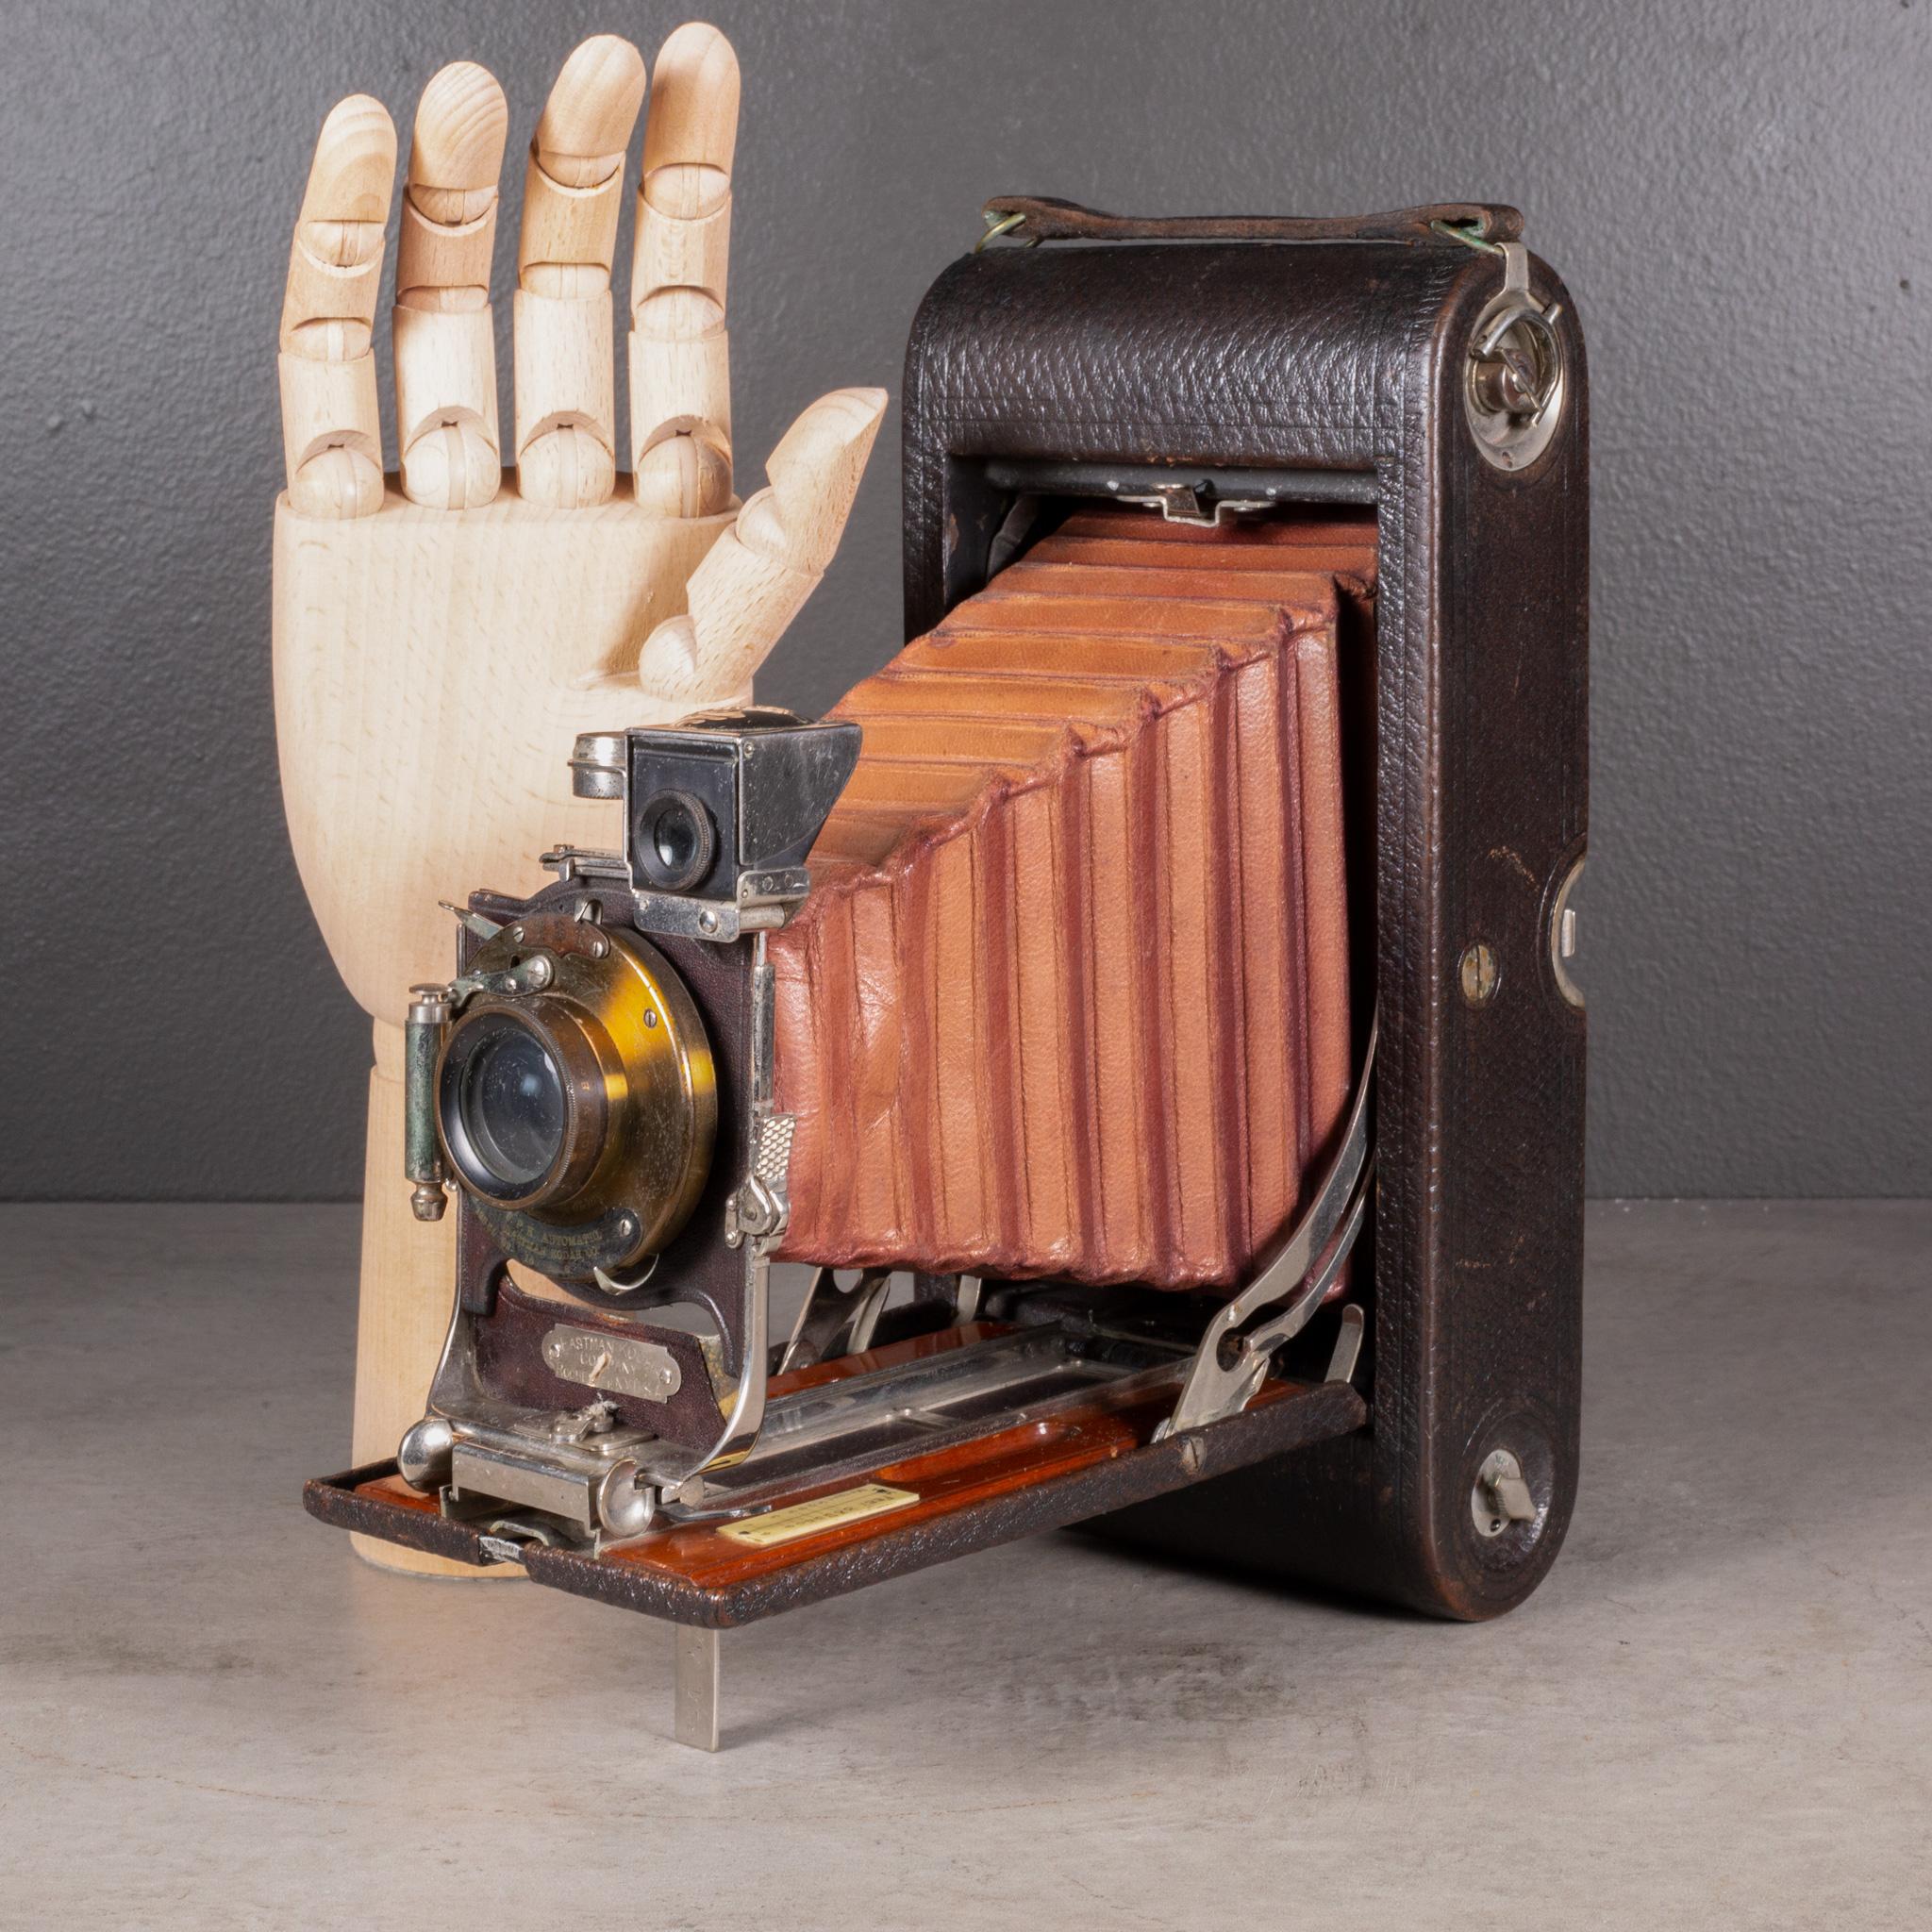 À PROPOS DE

Un grand appareil photo pliant Eastman Kodak No. 3A avec soufflet rouge et incrustation en acajou. La carrosserie est recouverte de cuir avec des touches de chrome et de laiton. L'appareil photo se plie pour atteindre 2 pouces. Cette